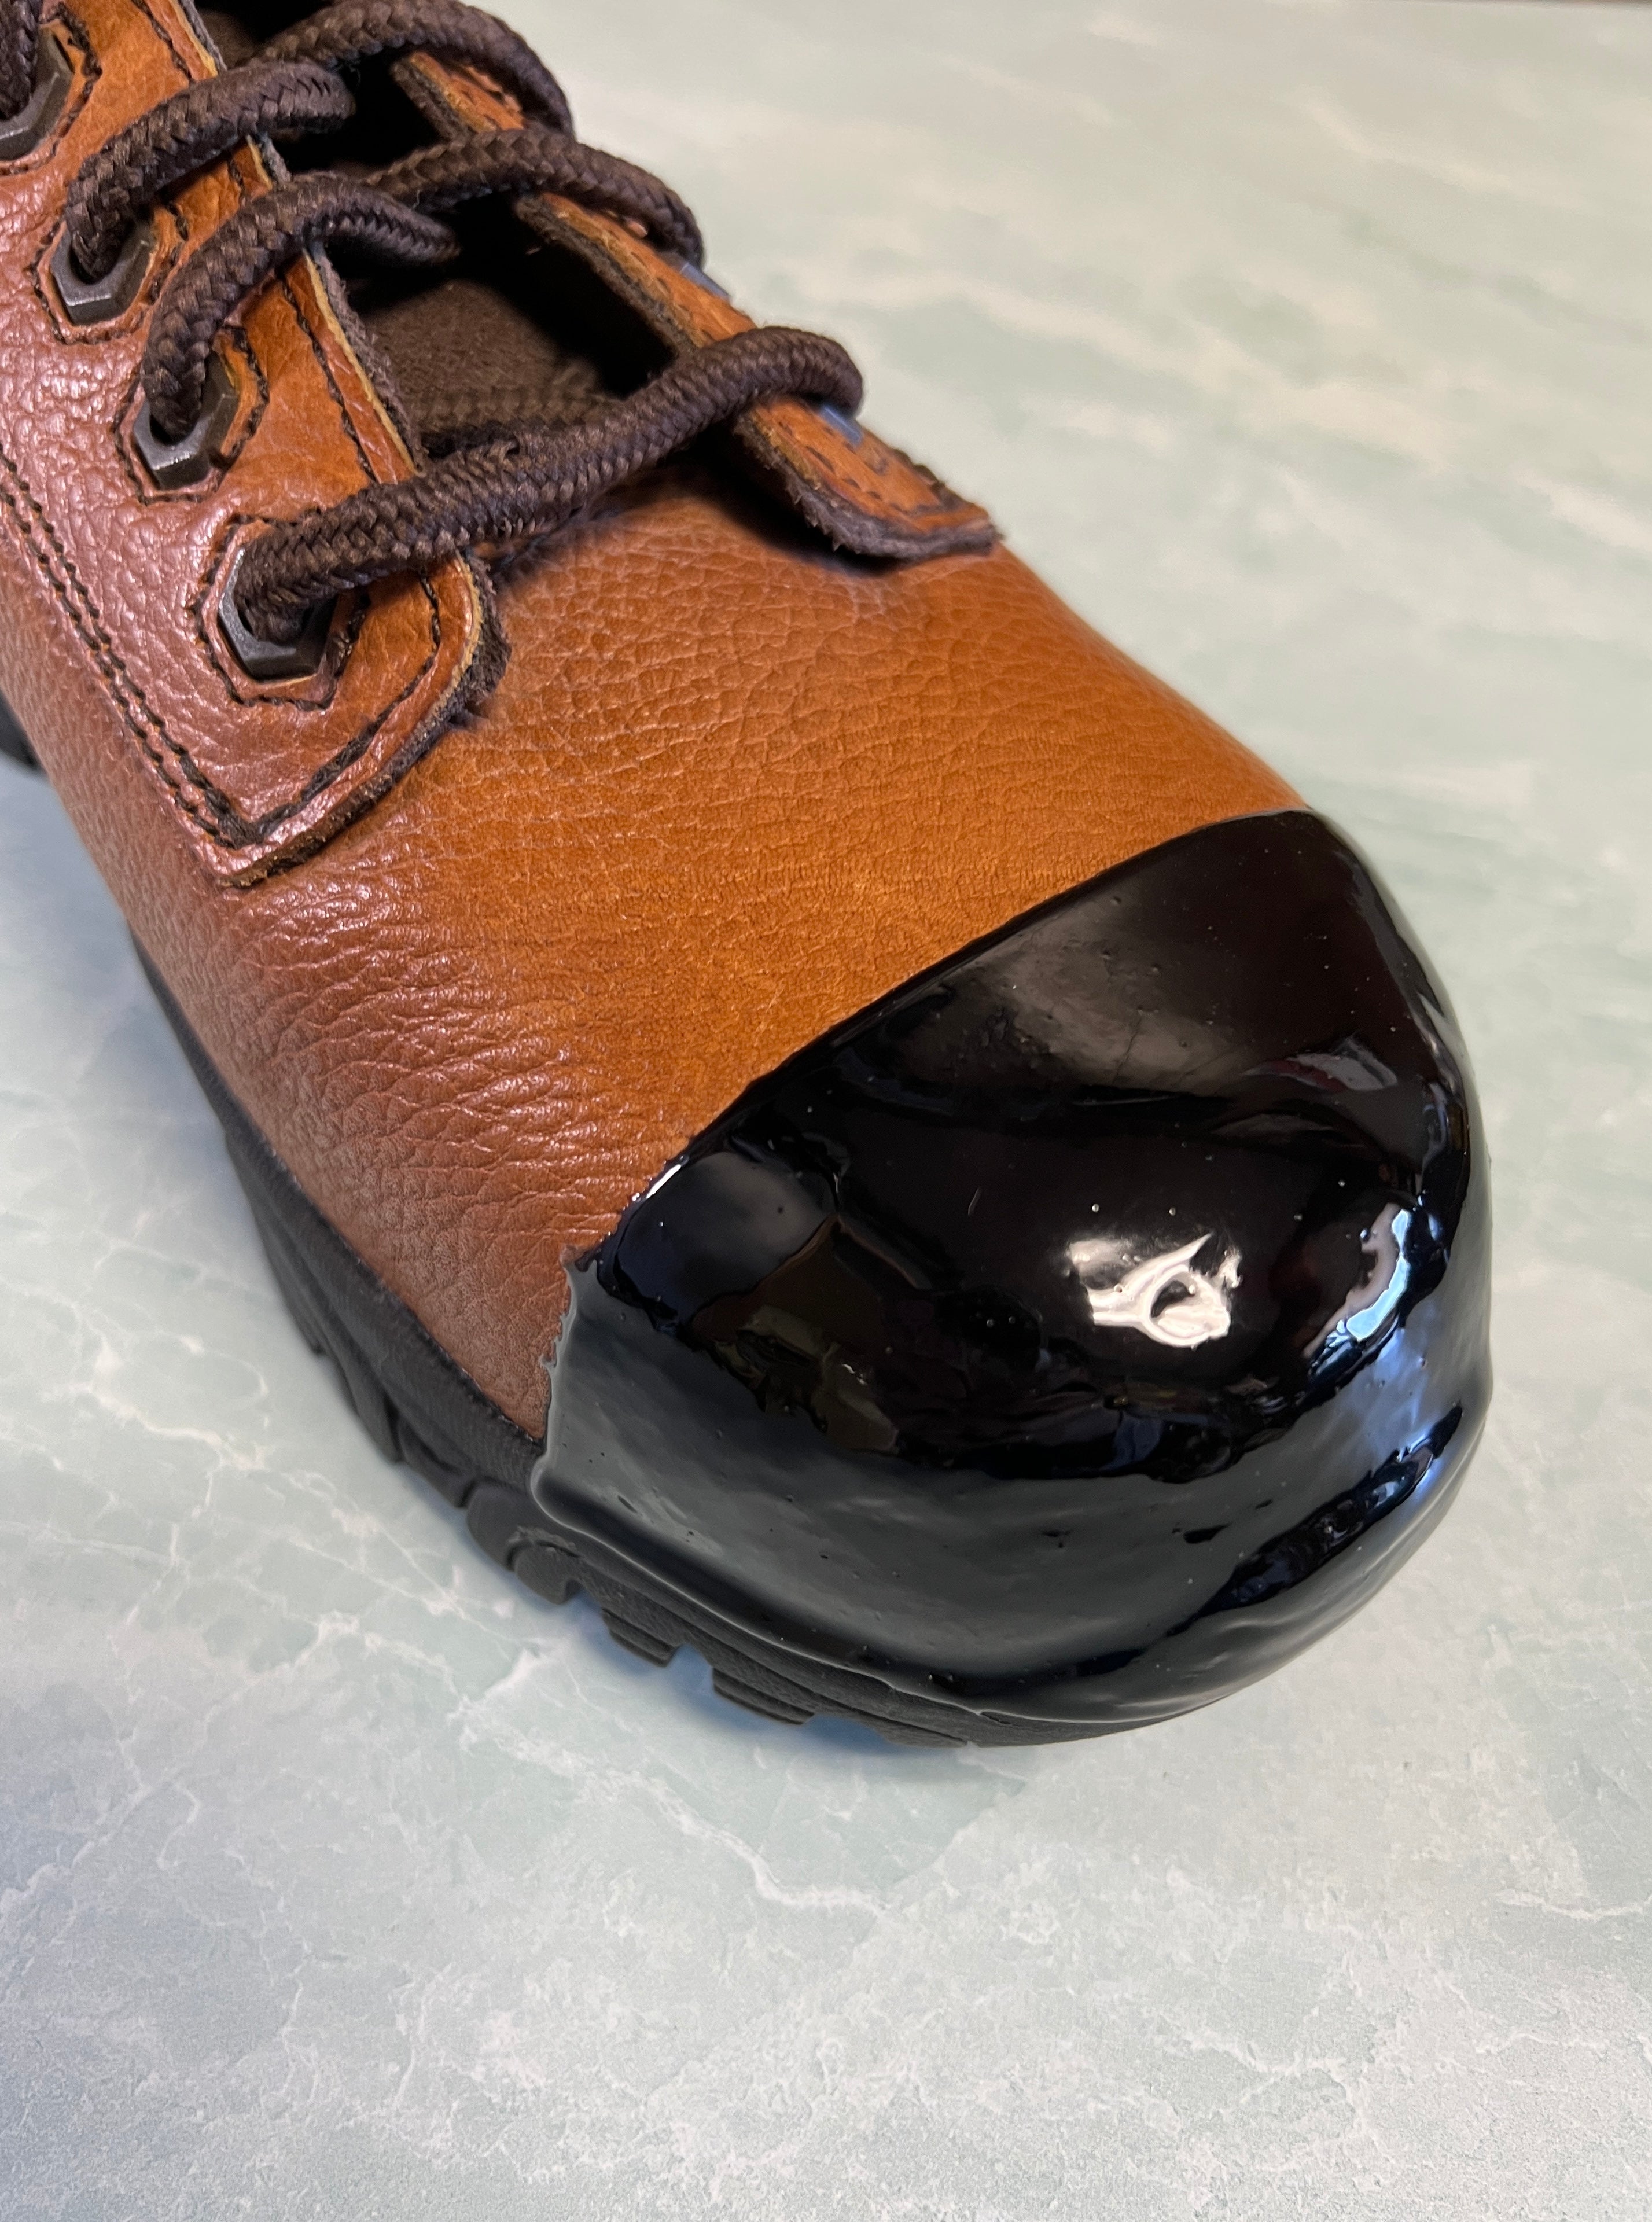 Tuff Toe Shoe Repair & Protection in Black